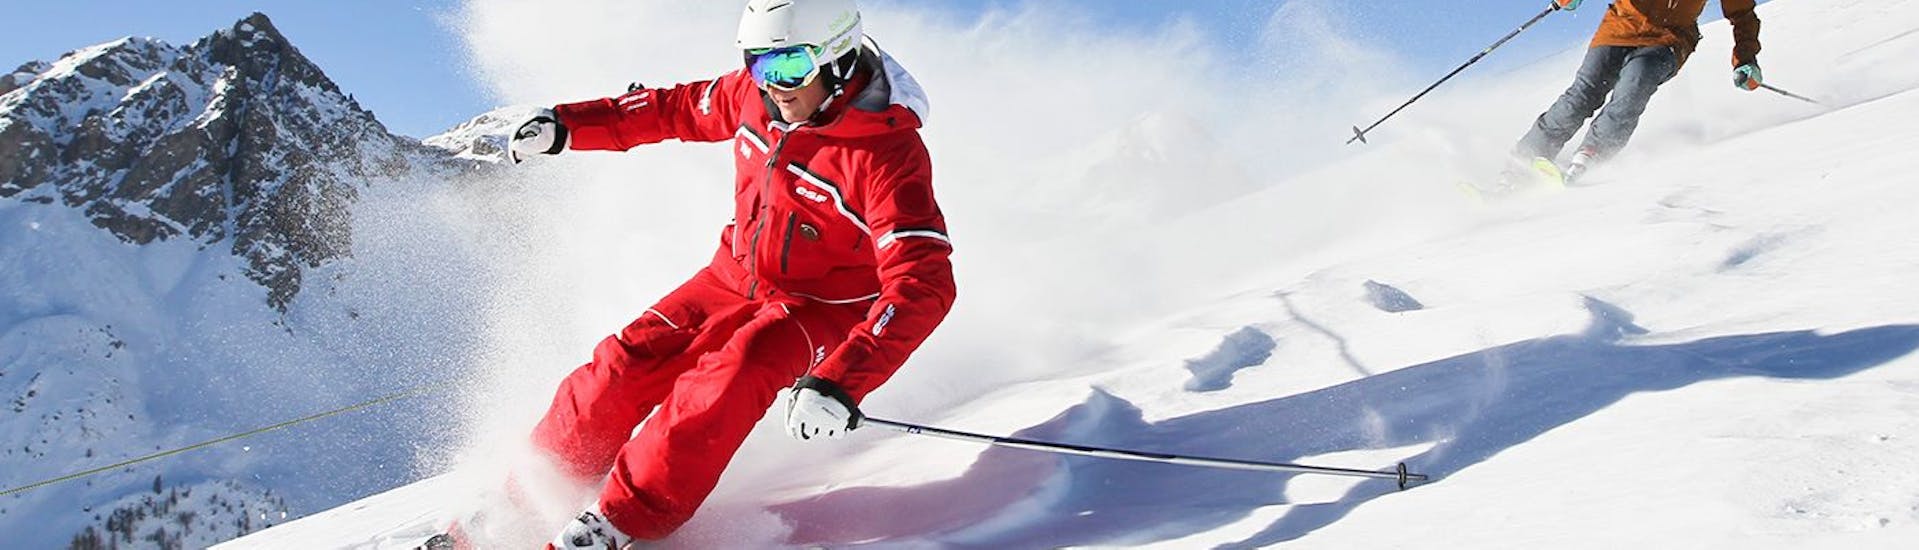 Skilessen voor volwassenen vanaf 14 jaar voor alle niveaus.